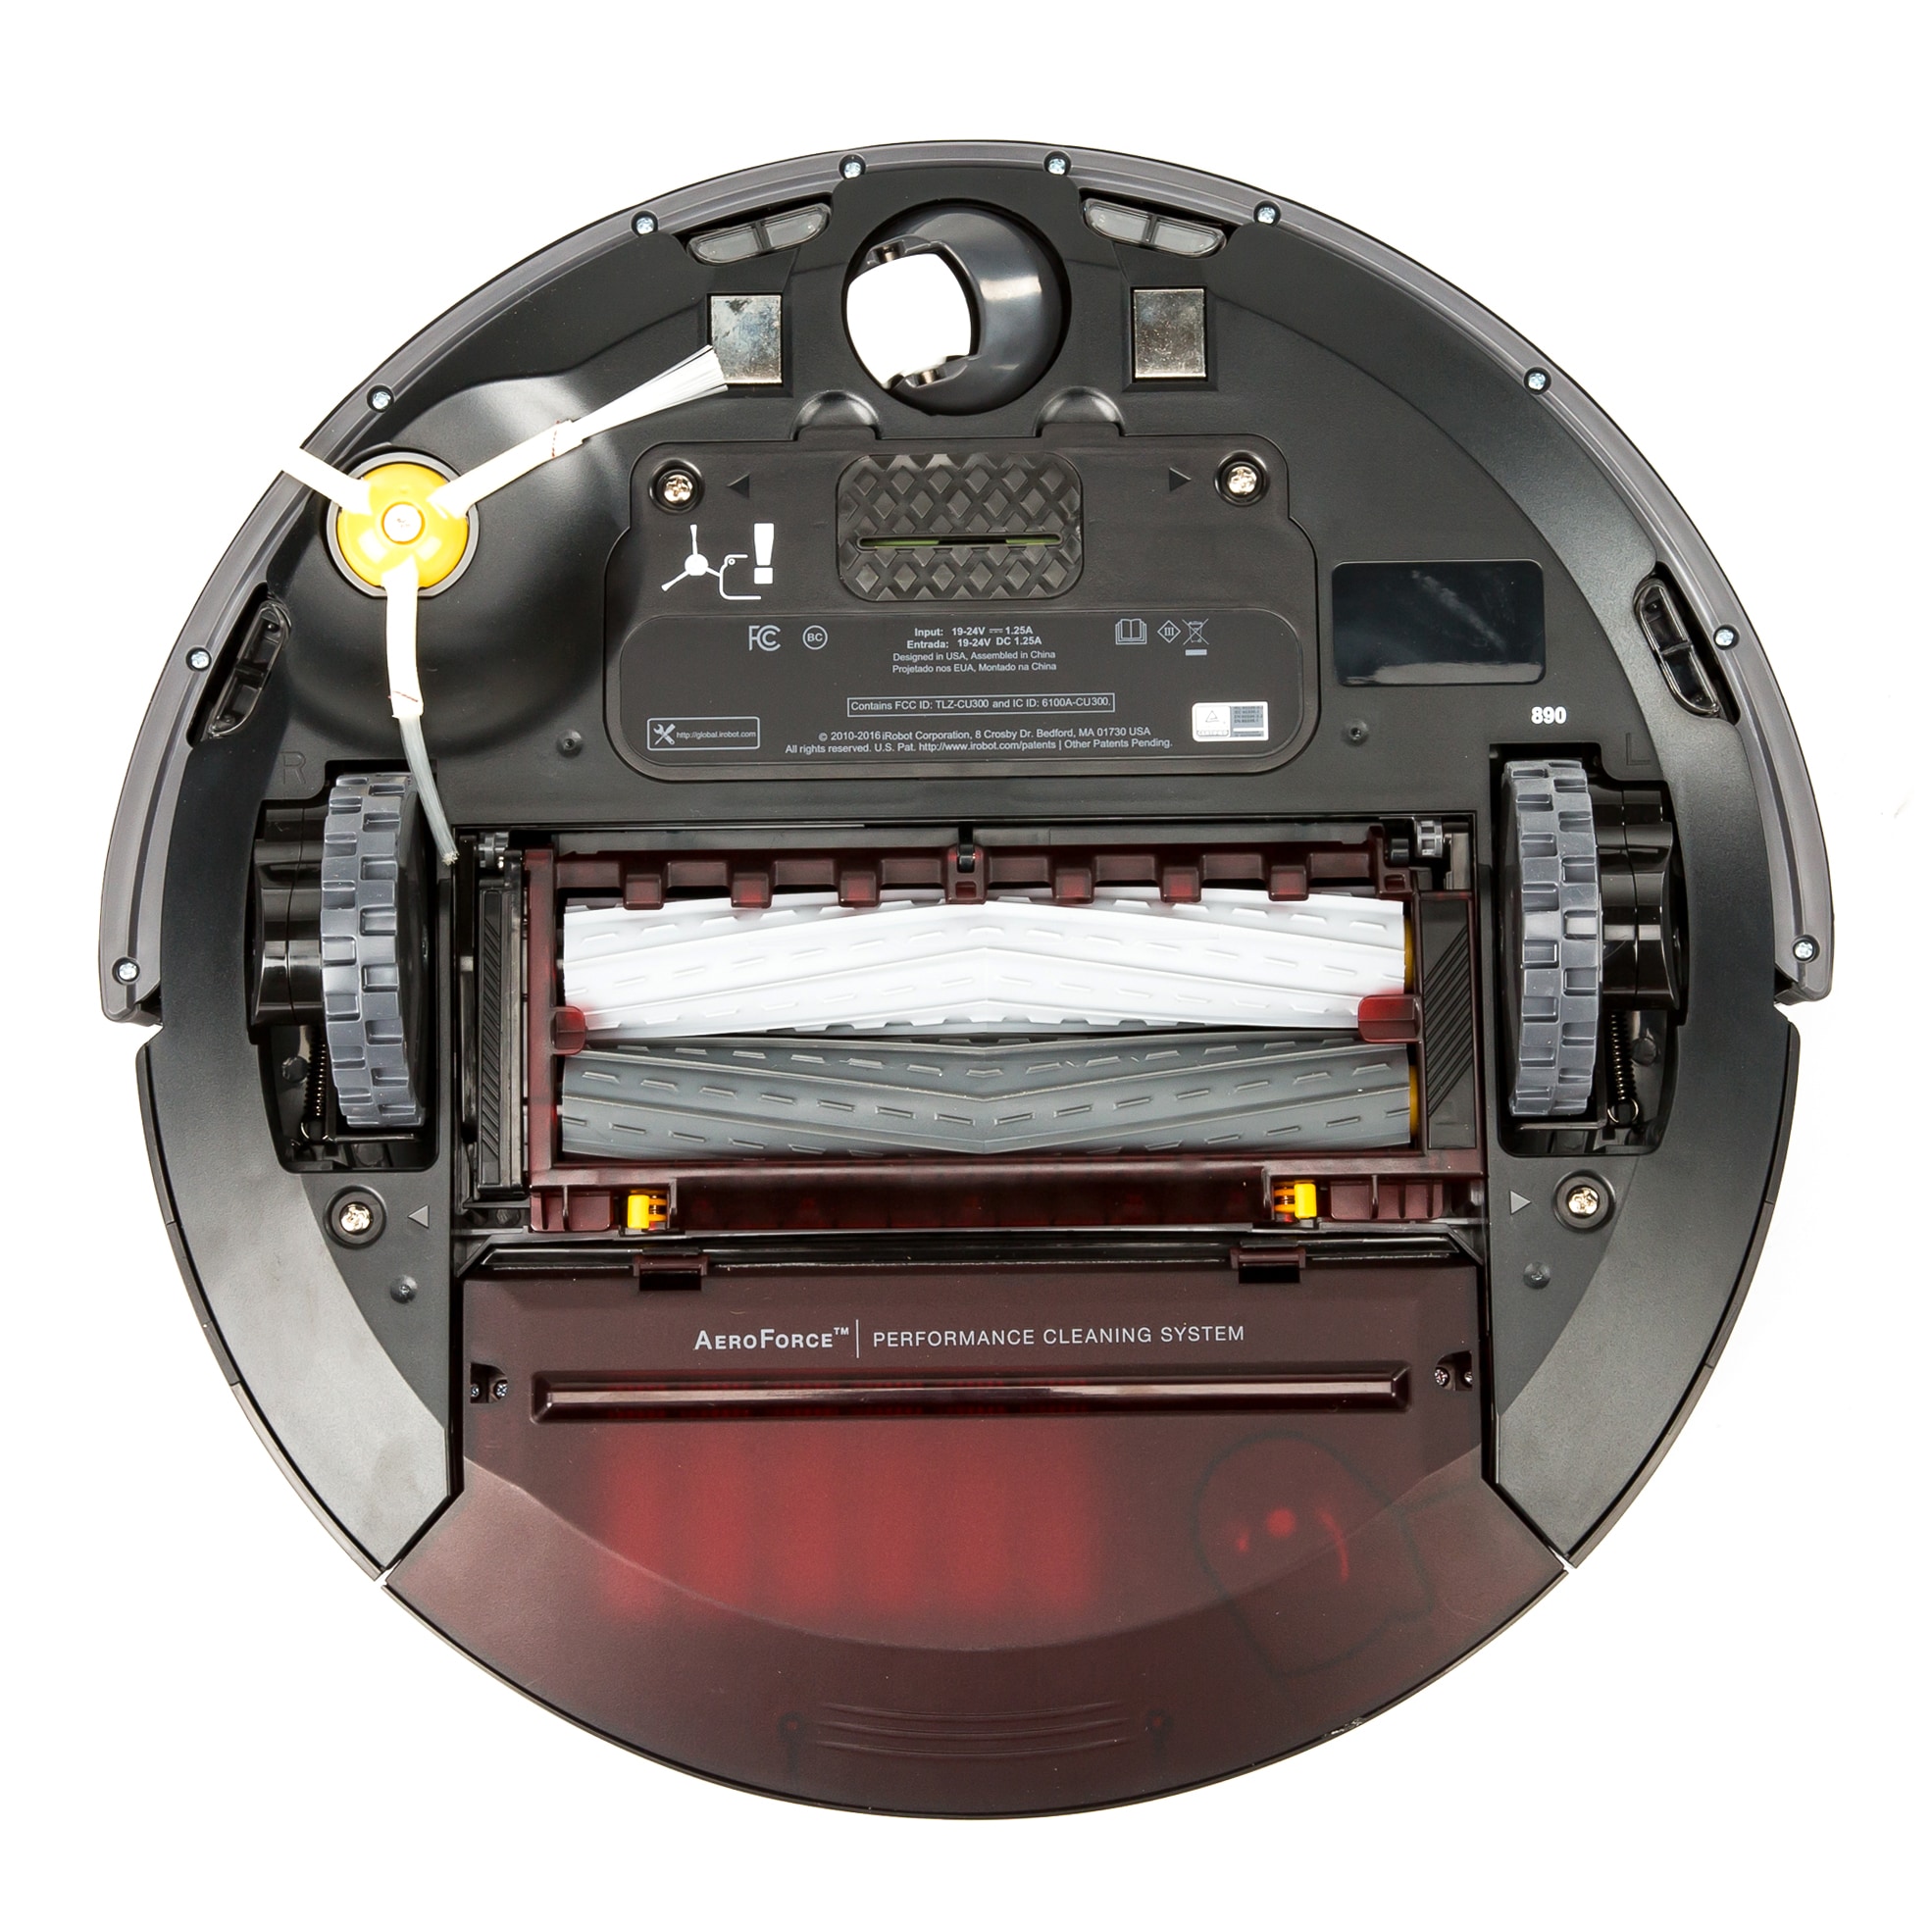 iRobot Roomba R614-6144, Robot Aspiradora Inteligente, Serie R614-6144,  Contenido: 1 Aspiradora Inalámbrica Roomba R614… - Multicleaners